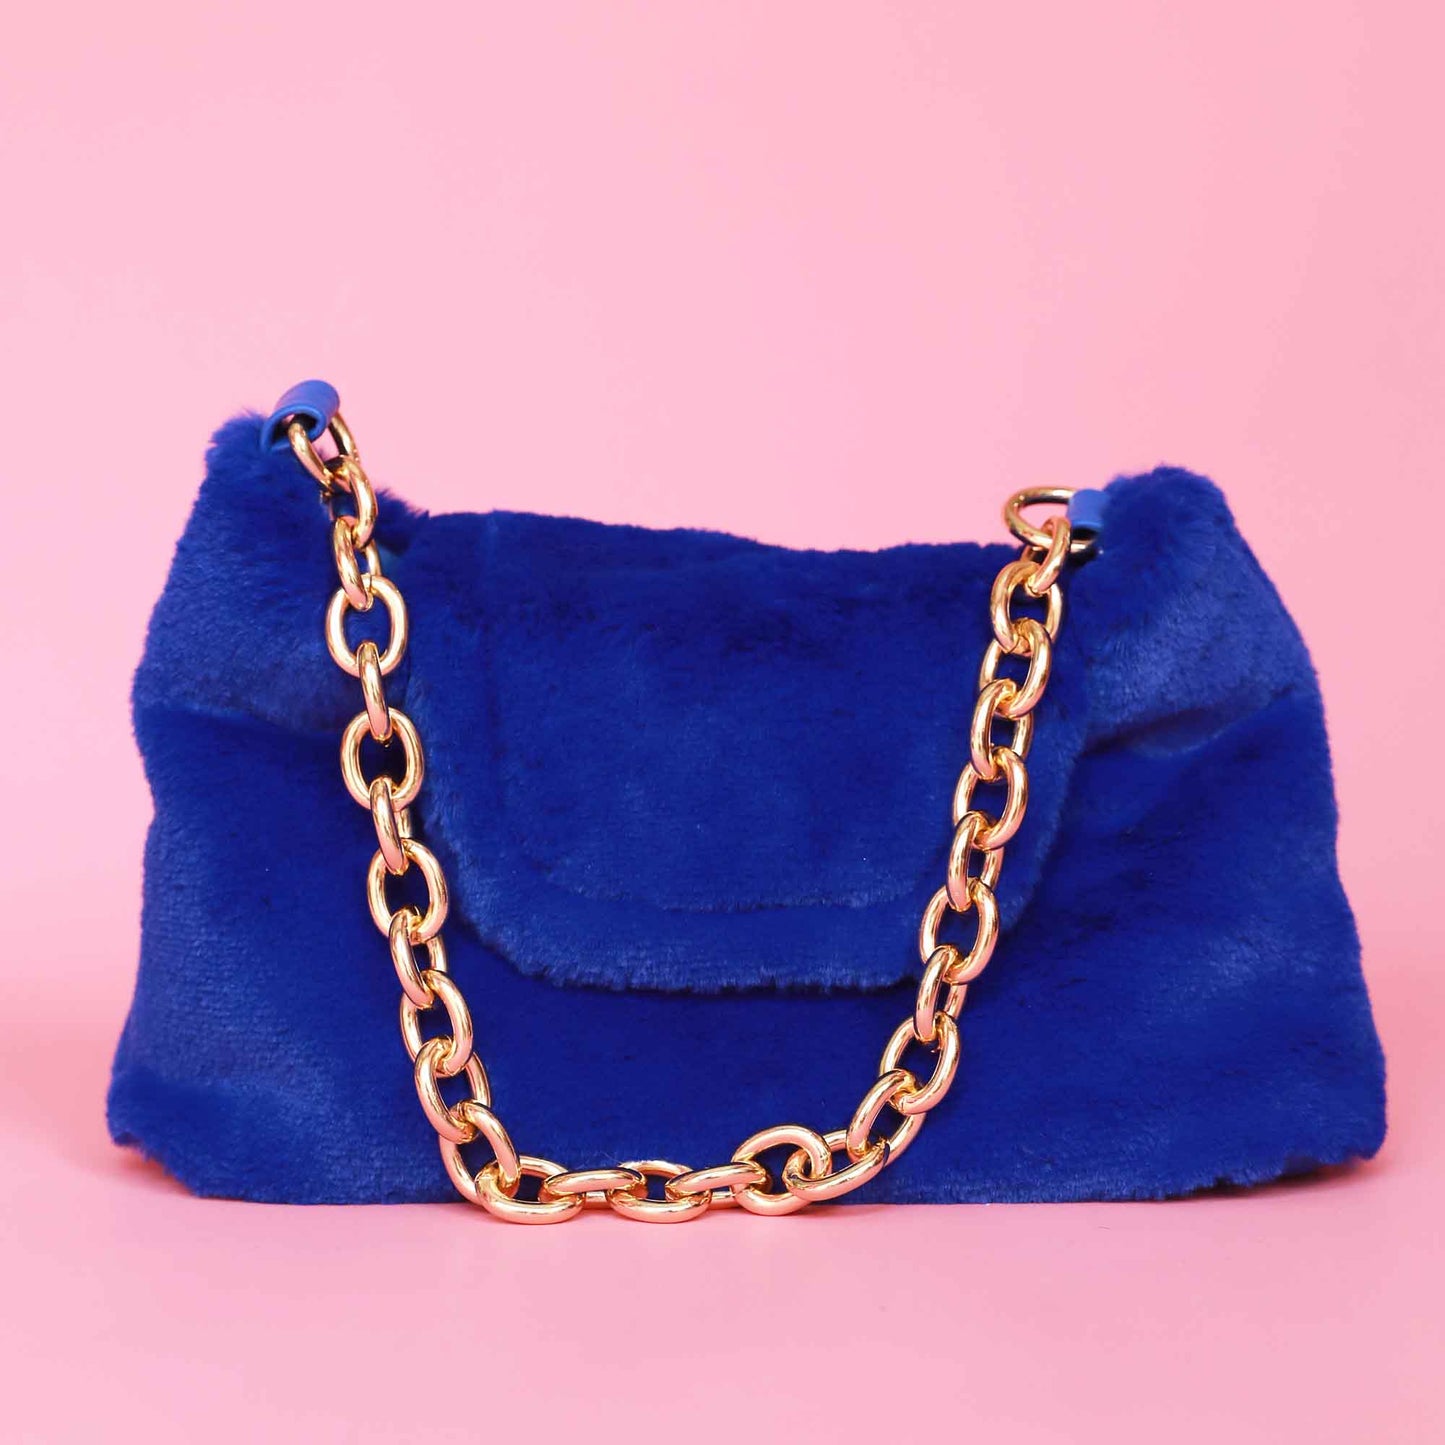 Luna Bag in Blue